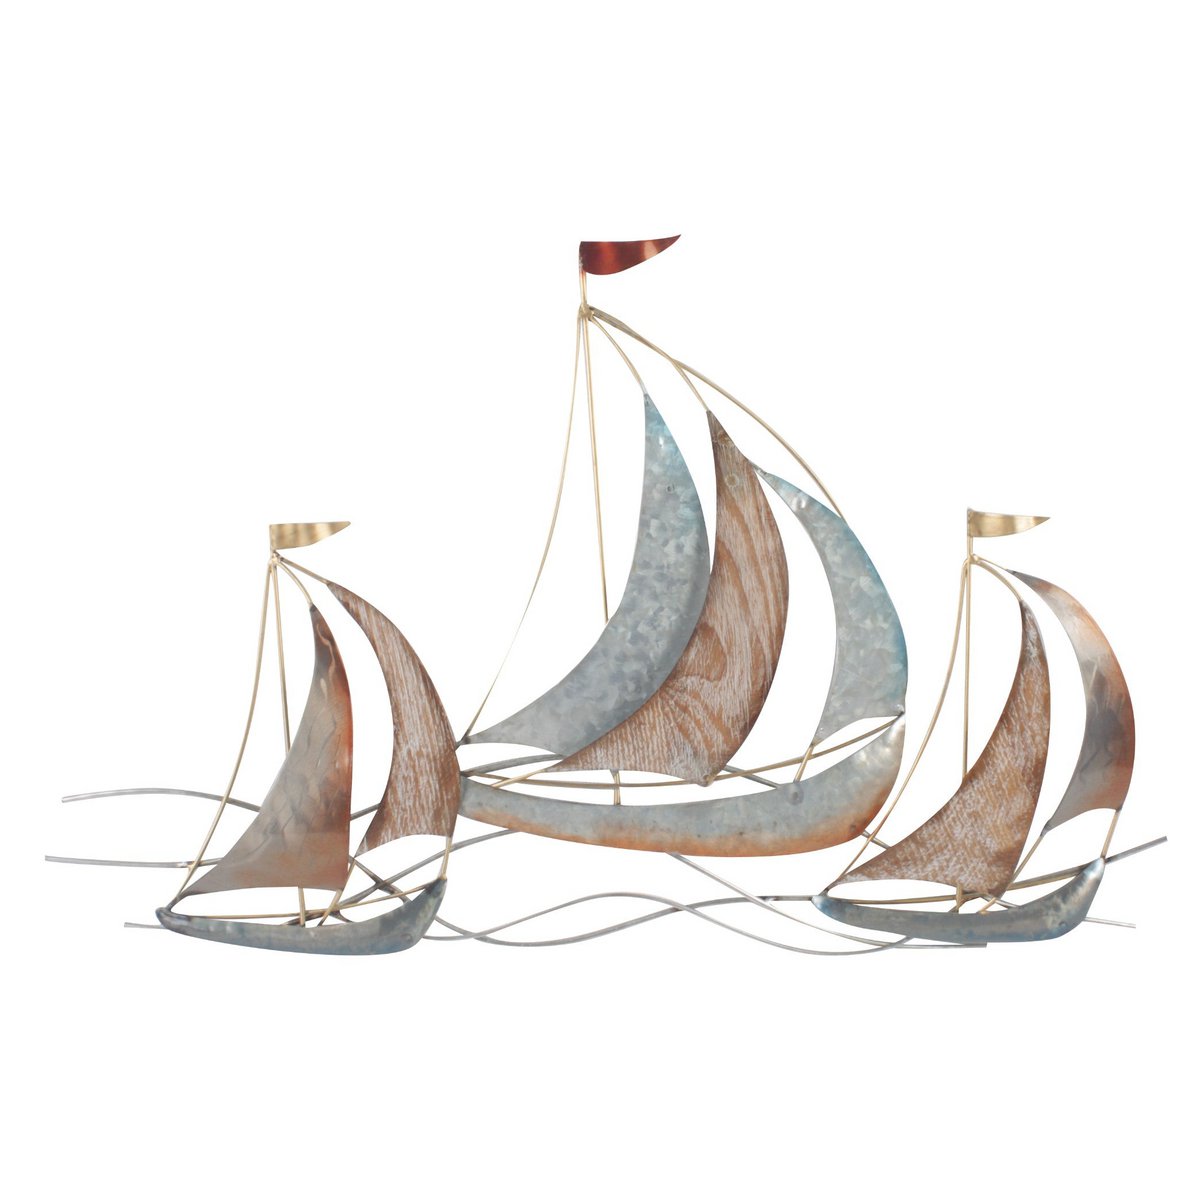 Vor dem Wind 66 cm Wanddeko Segelboote Boote Wandbild Metall Wand Dekoration 3D Artishoque